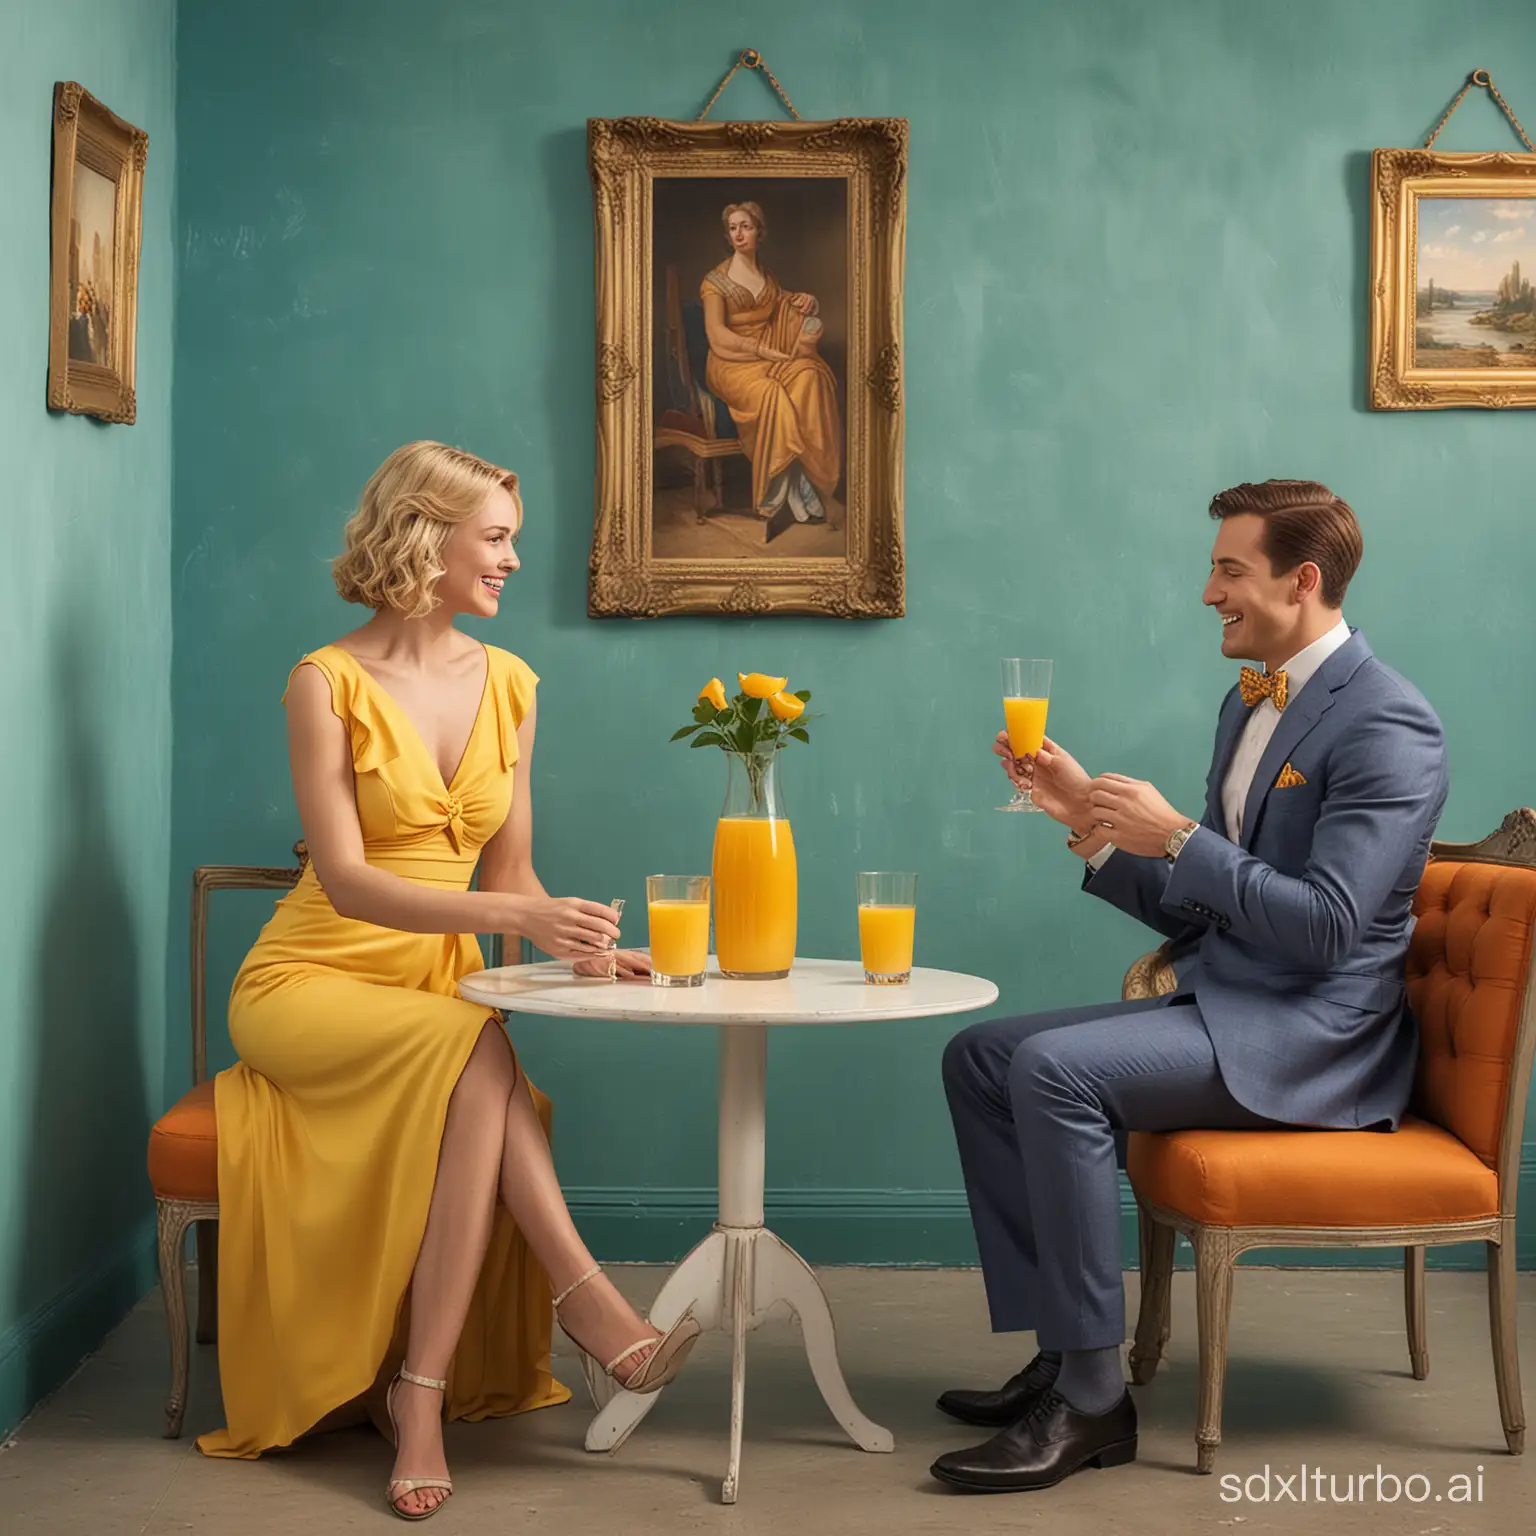 fais une image 3D vue d'un homme et d'une femme assis sur des chaises bleu avec une petite table entre eux deux. Ils sont dans l’angle d’une pièce. L’homme est à gauche de l’image et la femme à droite. L’homme est en costume bleu avec un noeud papillon, il a des cheveux courts marron et un verre de jus d'orange à la main. La femme blonde est assise à droite, elle a une longue robe jaune et un verre de jus d’orange. Ils se regardent et sourient. Au premier plan il y a une table en verre avec la carafe de jus d’orange. Ils sont dans l’angle de la pièce avec des murs bleu/vert, et un tableau sur le mur de gauche. Le mur de gauche a aussi un rideau.